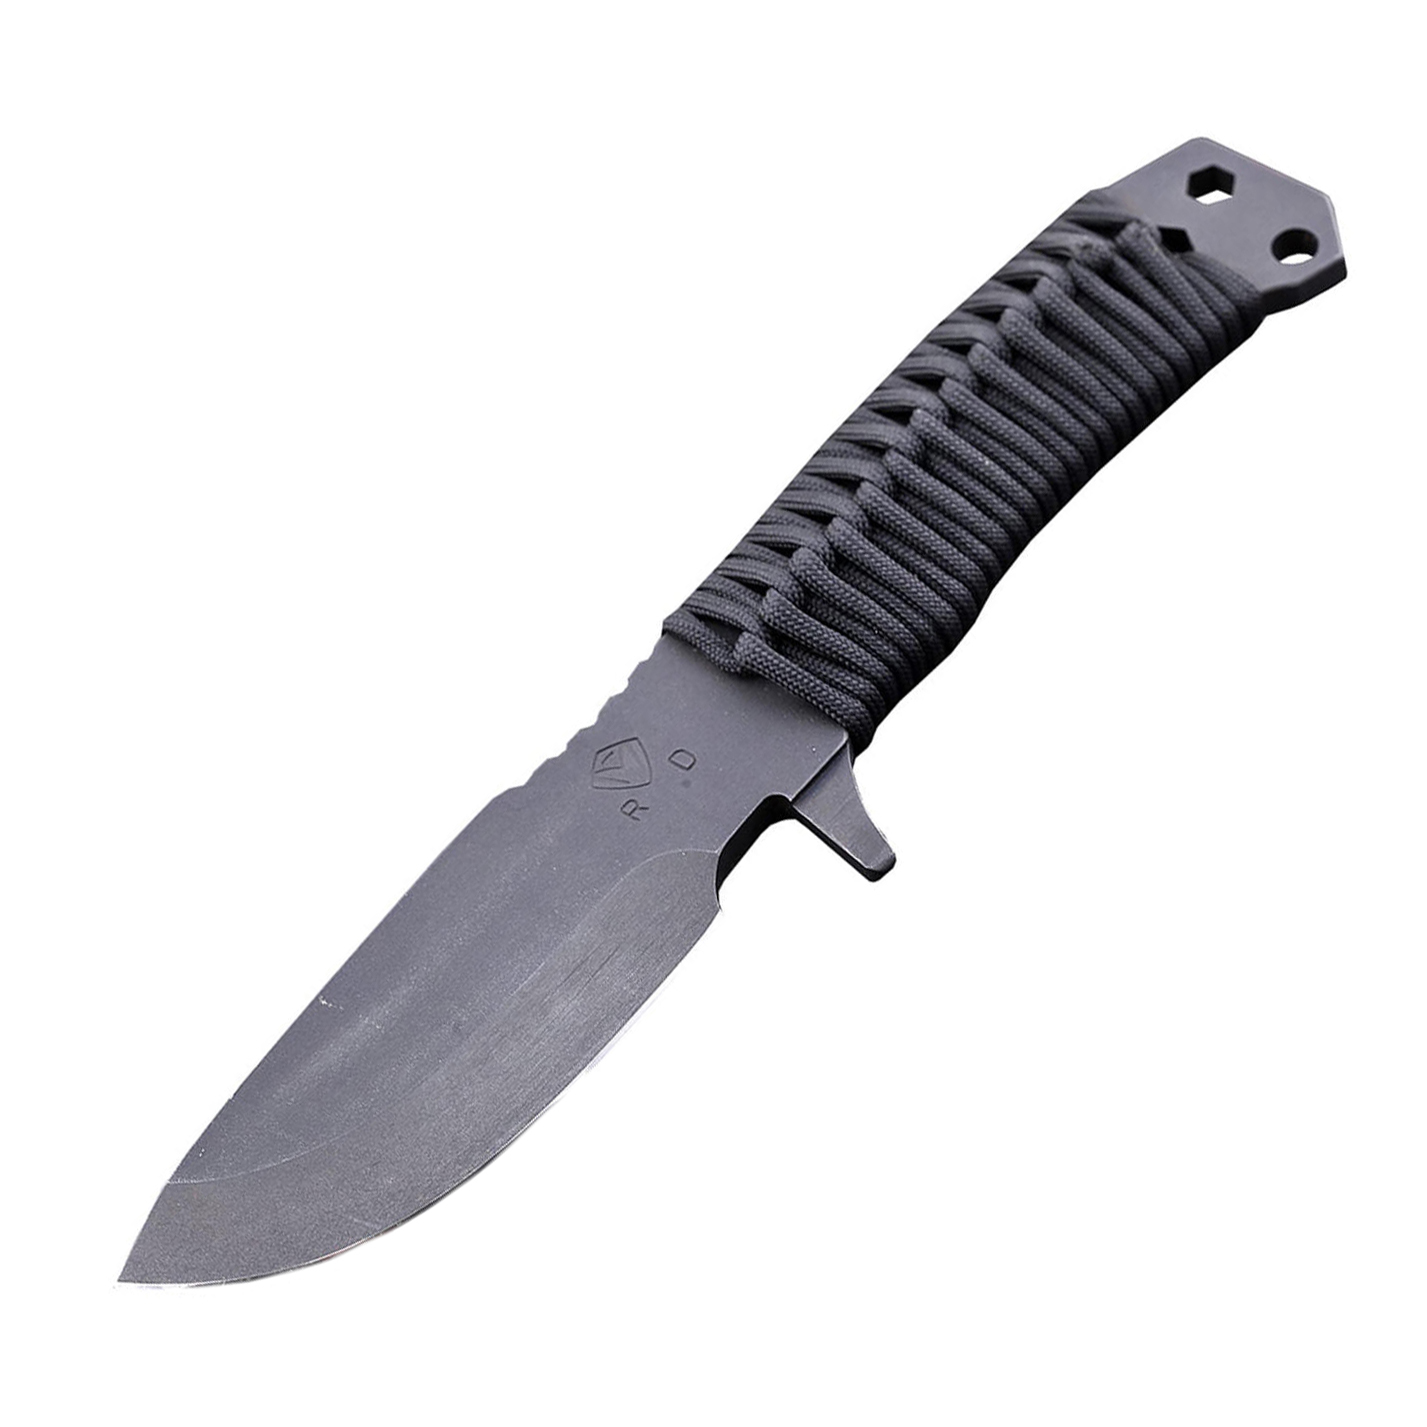 Нож с фиксированным клинком Medford D-FM-2, сталь D2 Tool Steel, рукоять паракорд нож с фиксированным клинком ontario rd4 micarta серрейтор